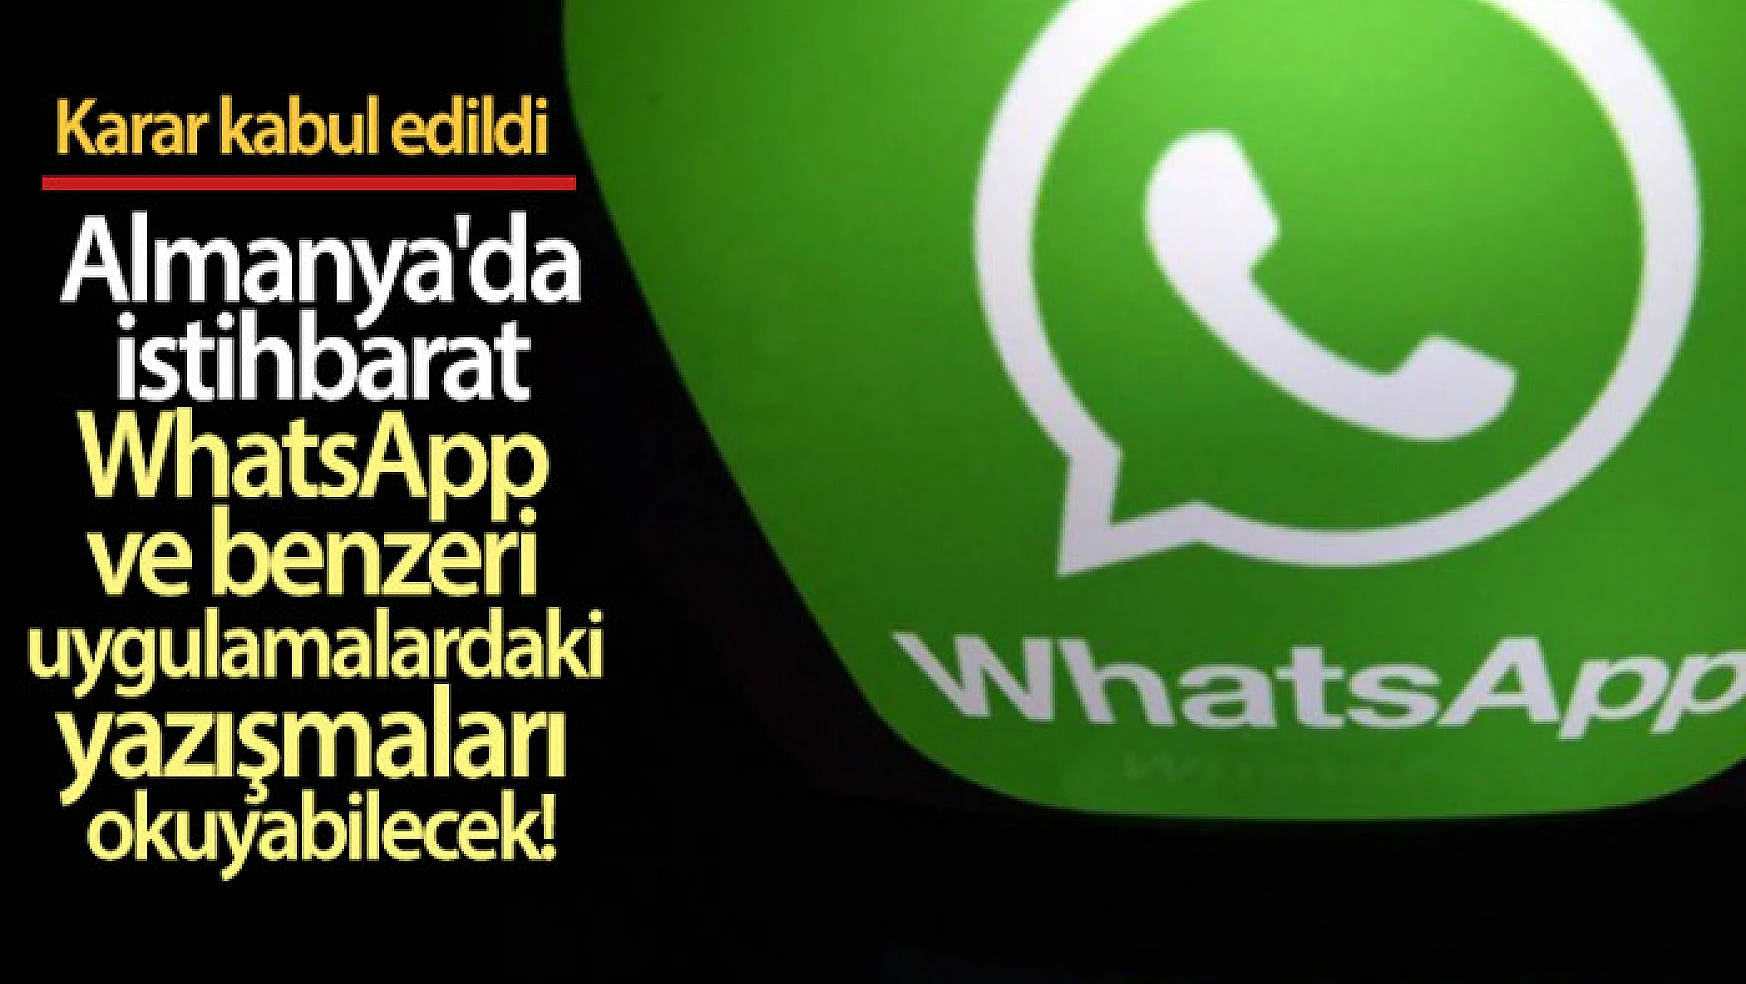 Almanya'da istihbarat WhatsApp ve benzeri uygulamalardaki yazışmaları okuyabilecek